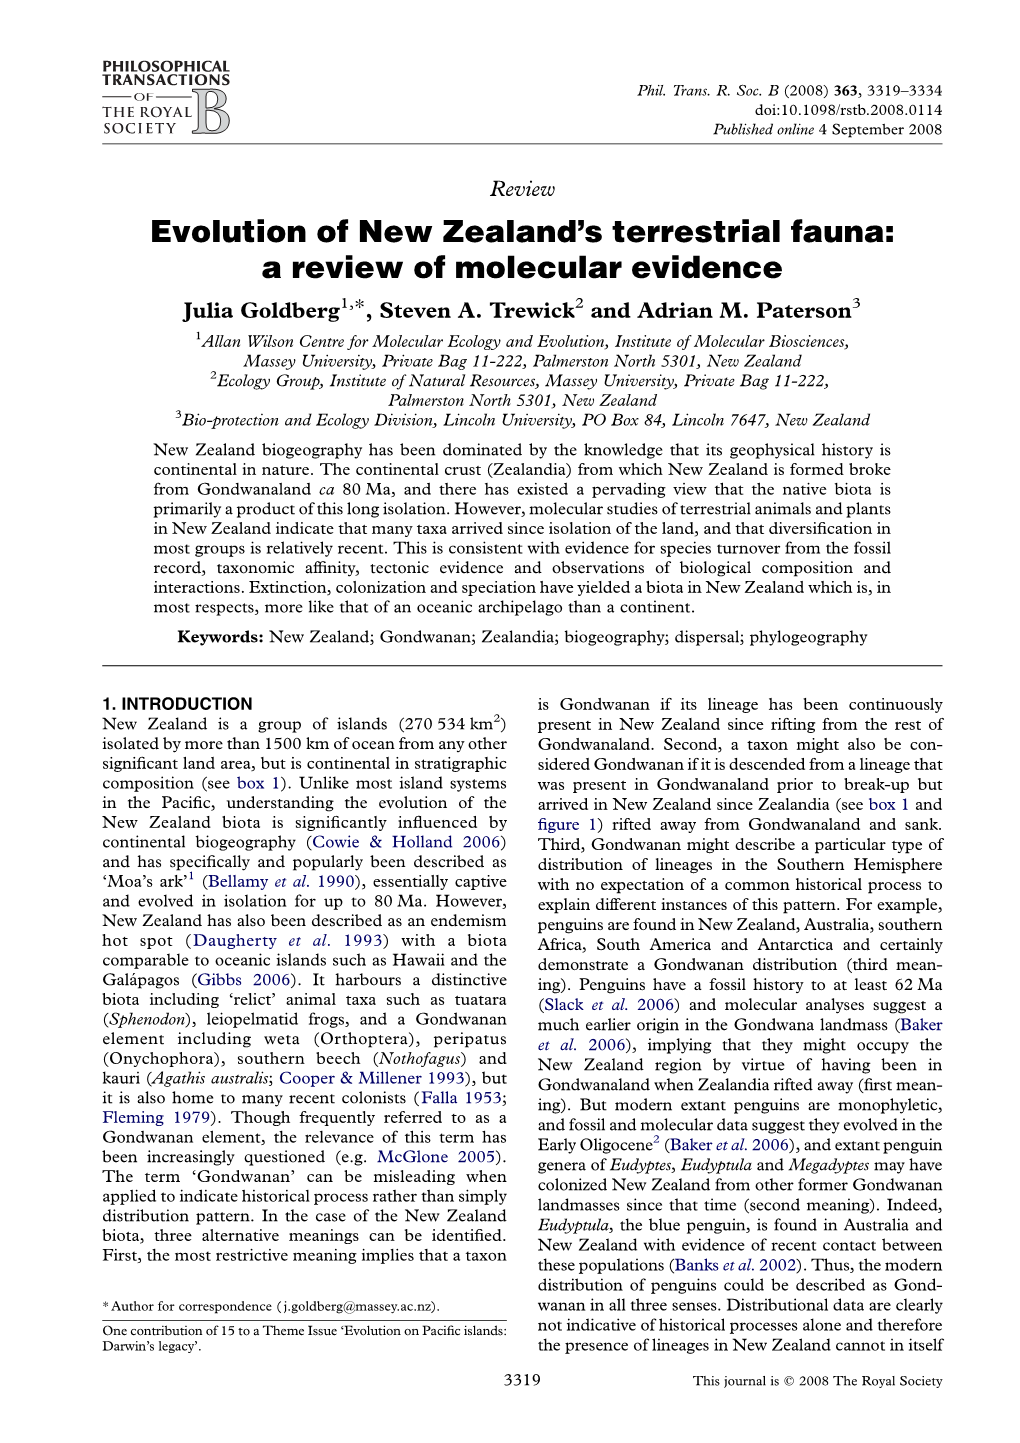 Evolution of New Zealand's Terrestrial Fauna